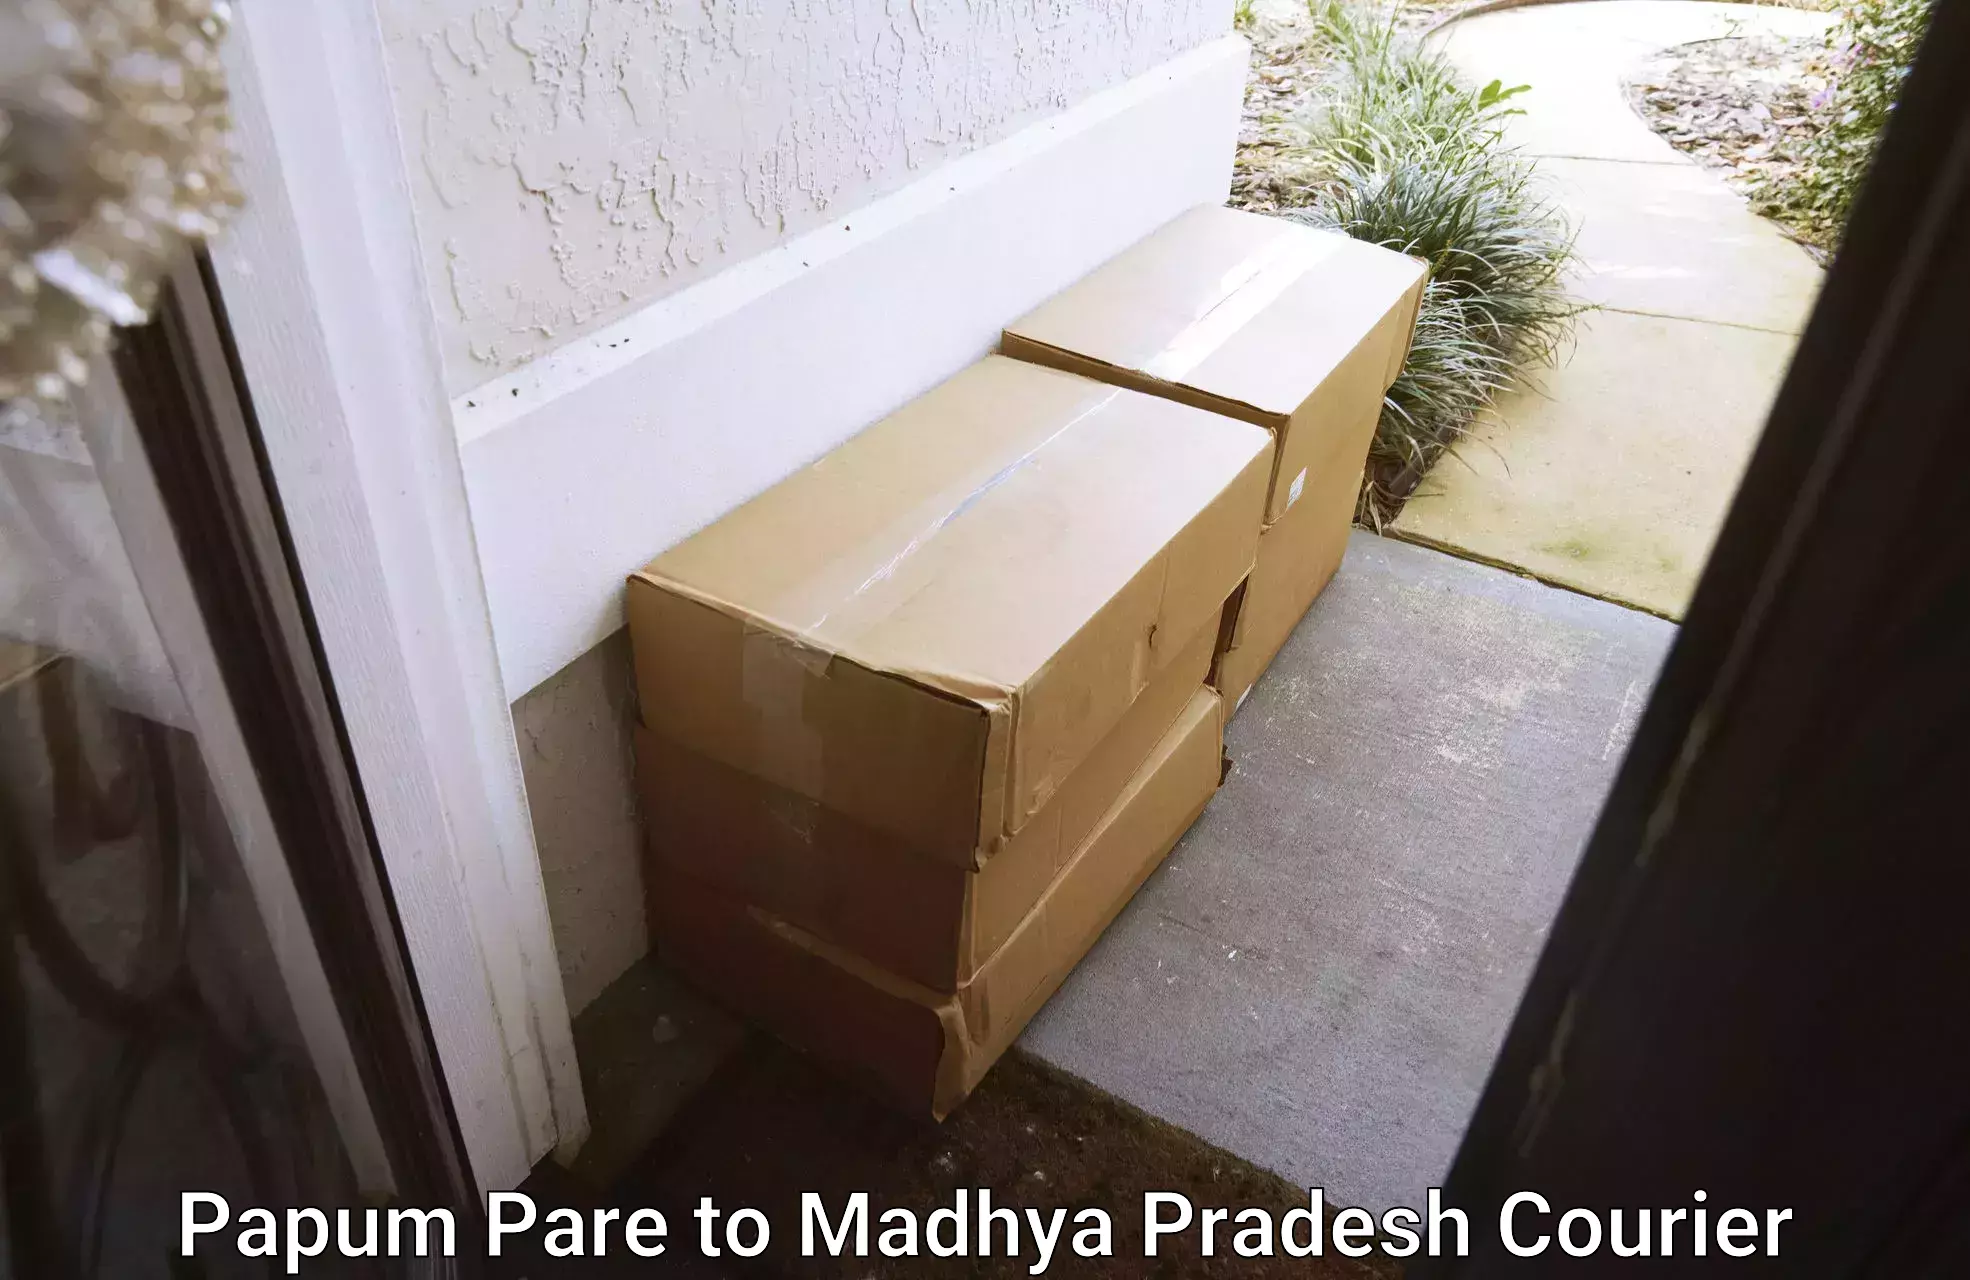 Premium courier services Papum Pare to BHEL Bhopal